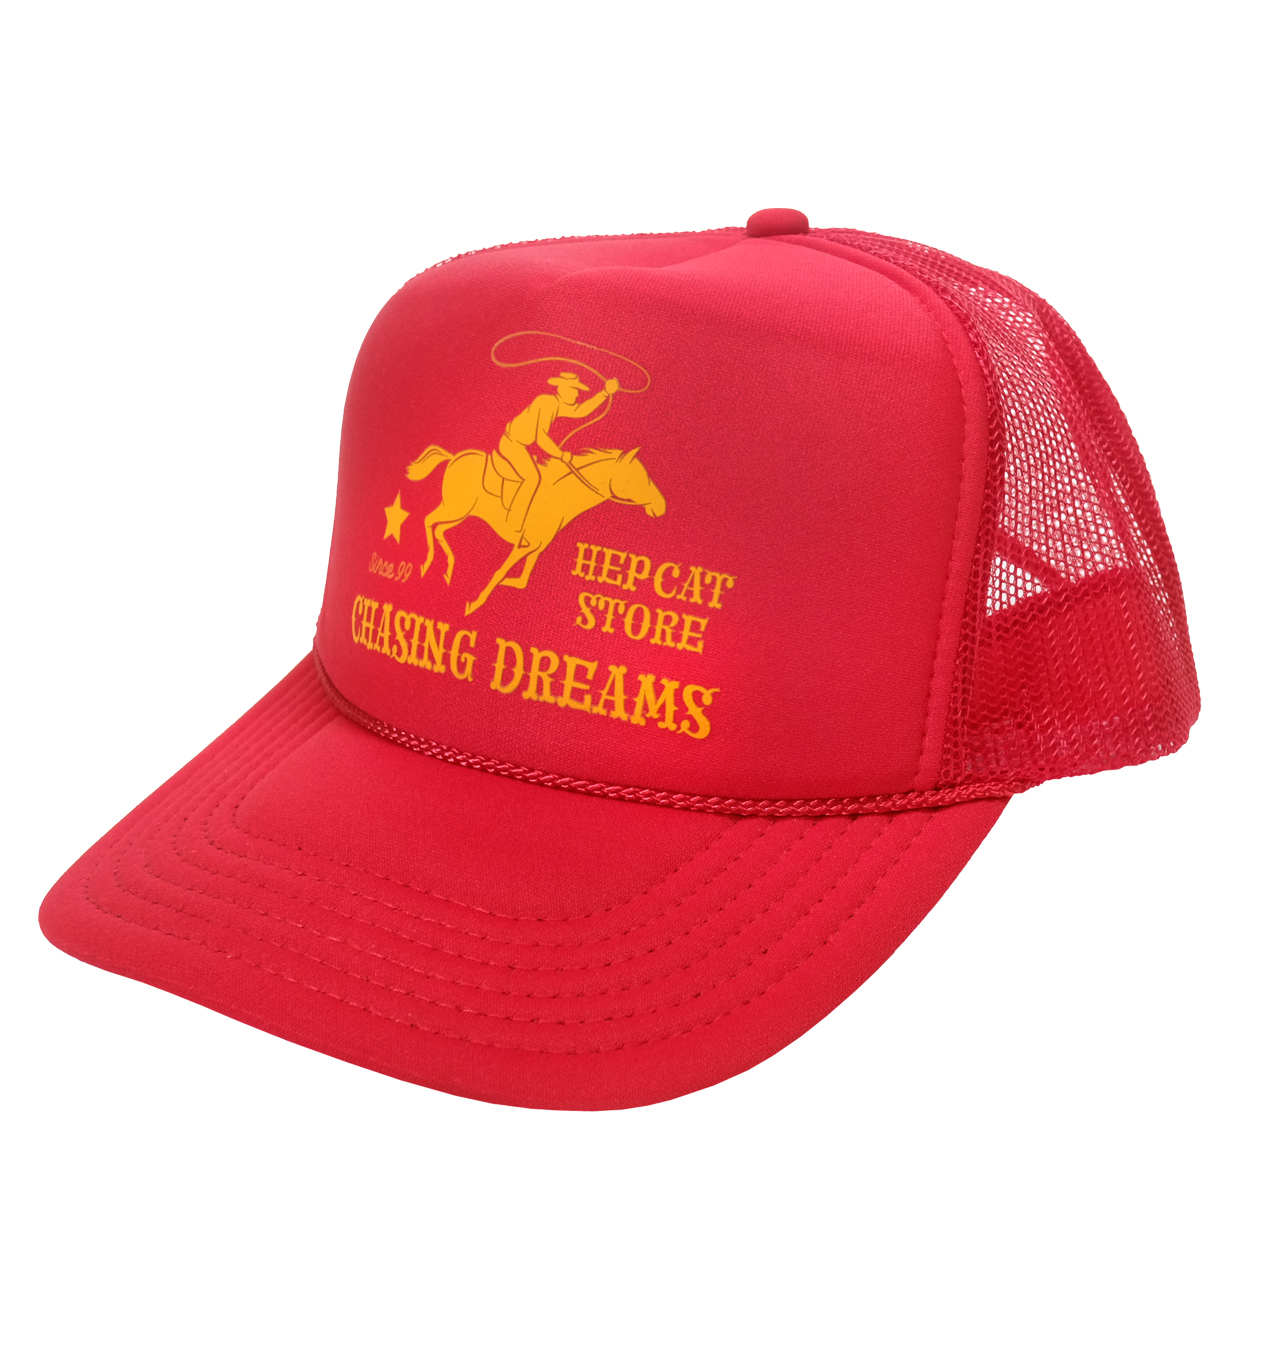 HepCat - Chasing Dreams Trucker Cap - Red